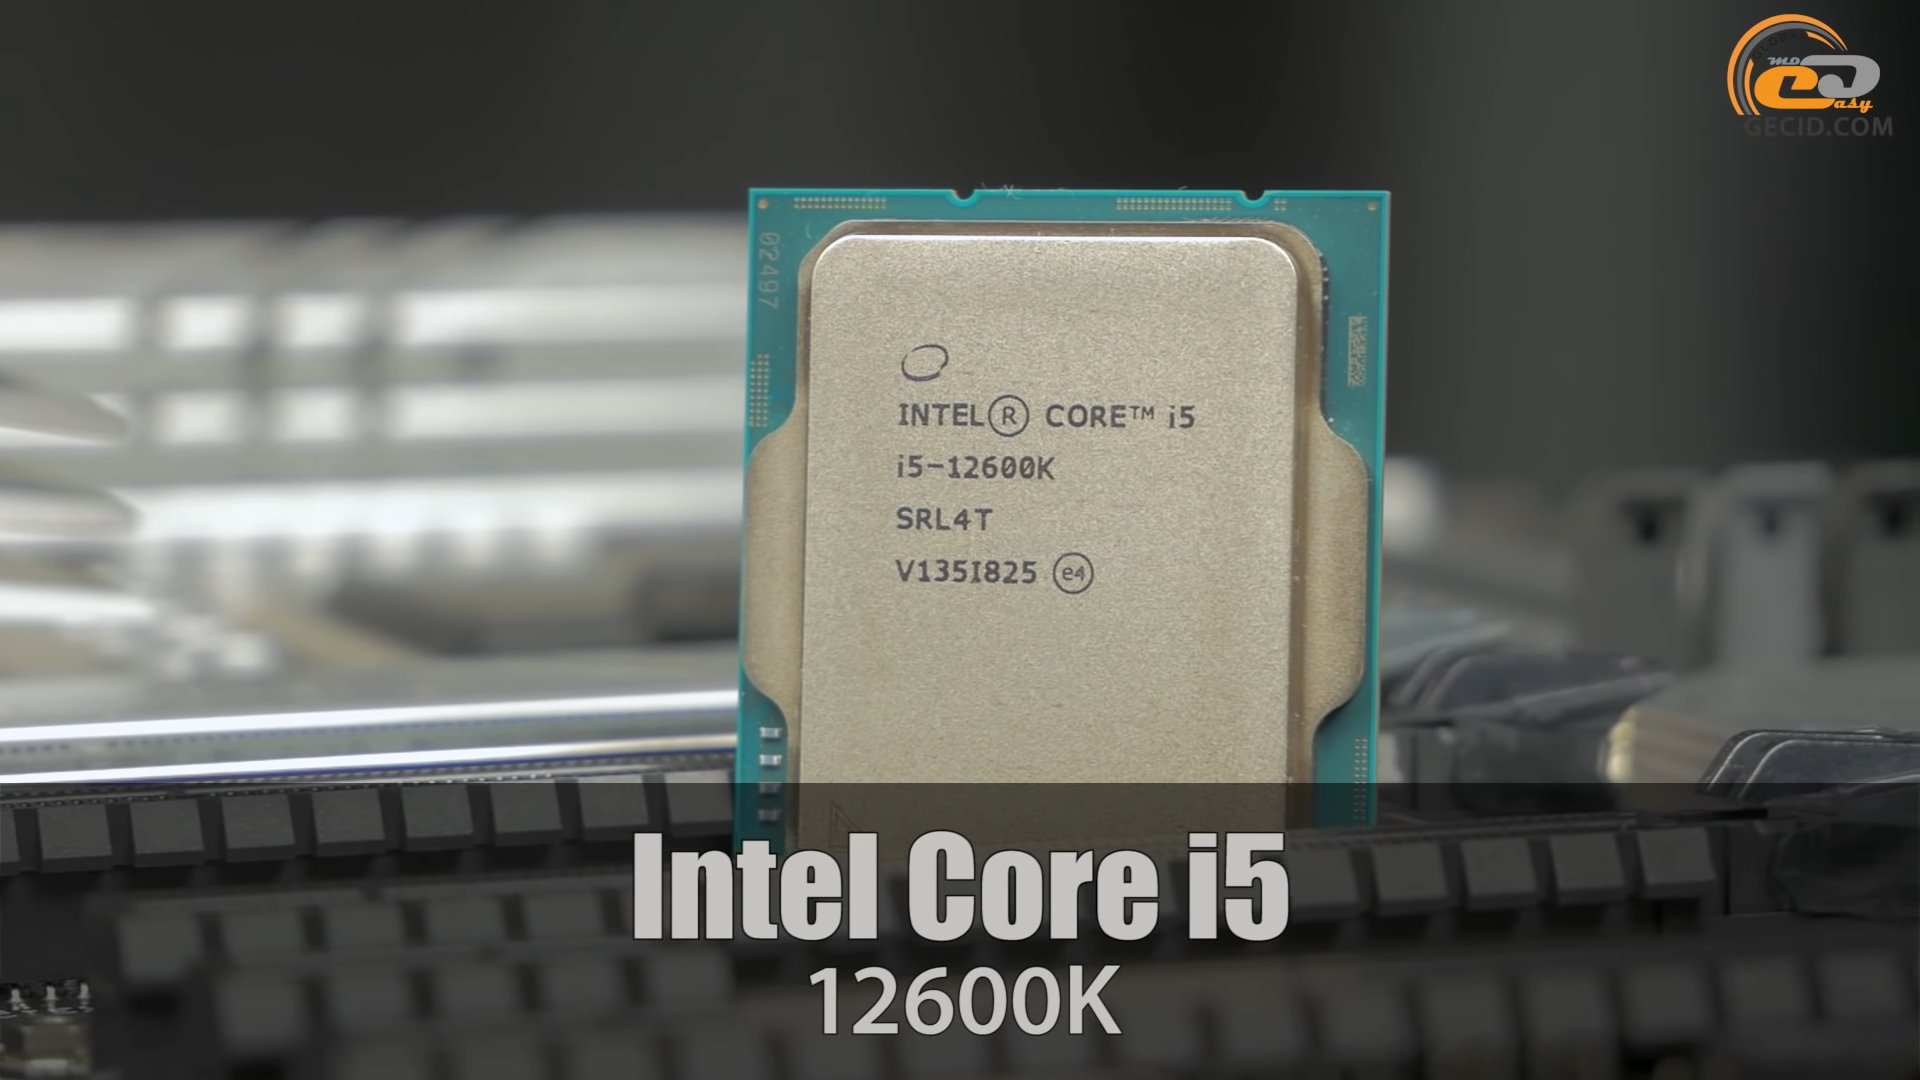 Процессор intel core 12700. Intel Core i5 12600k. Процессор Intel Core i5-12600k OEM. Intel Core i7 12700k. Процессор Intel Core i7 12700k.